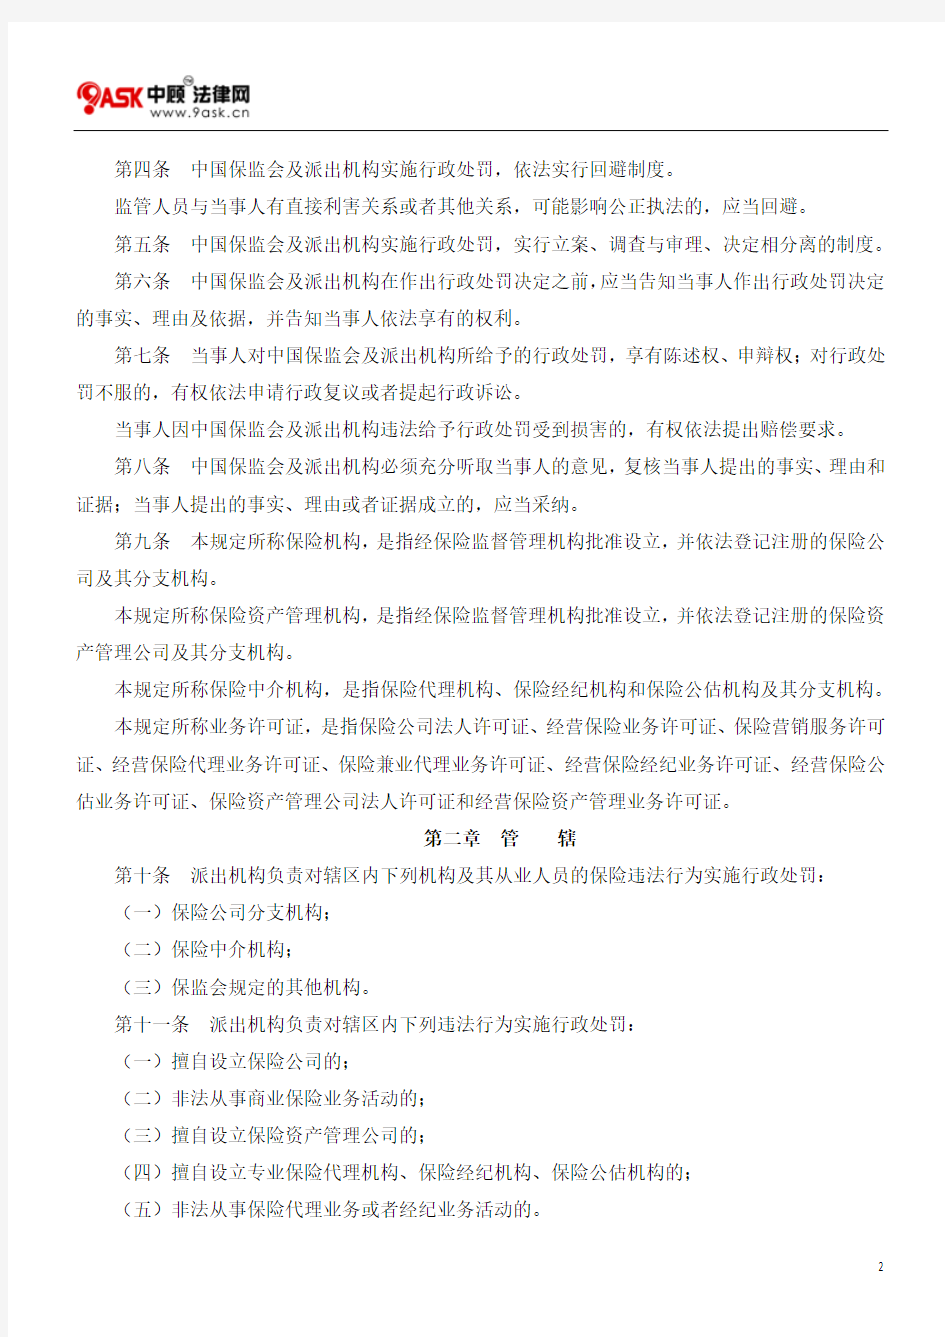 中国保险监督管理委员会行政处罚程序规定